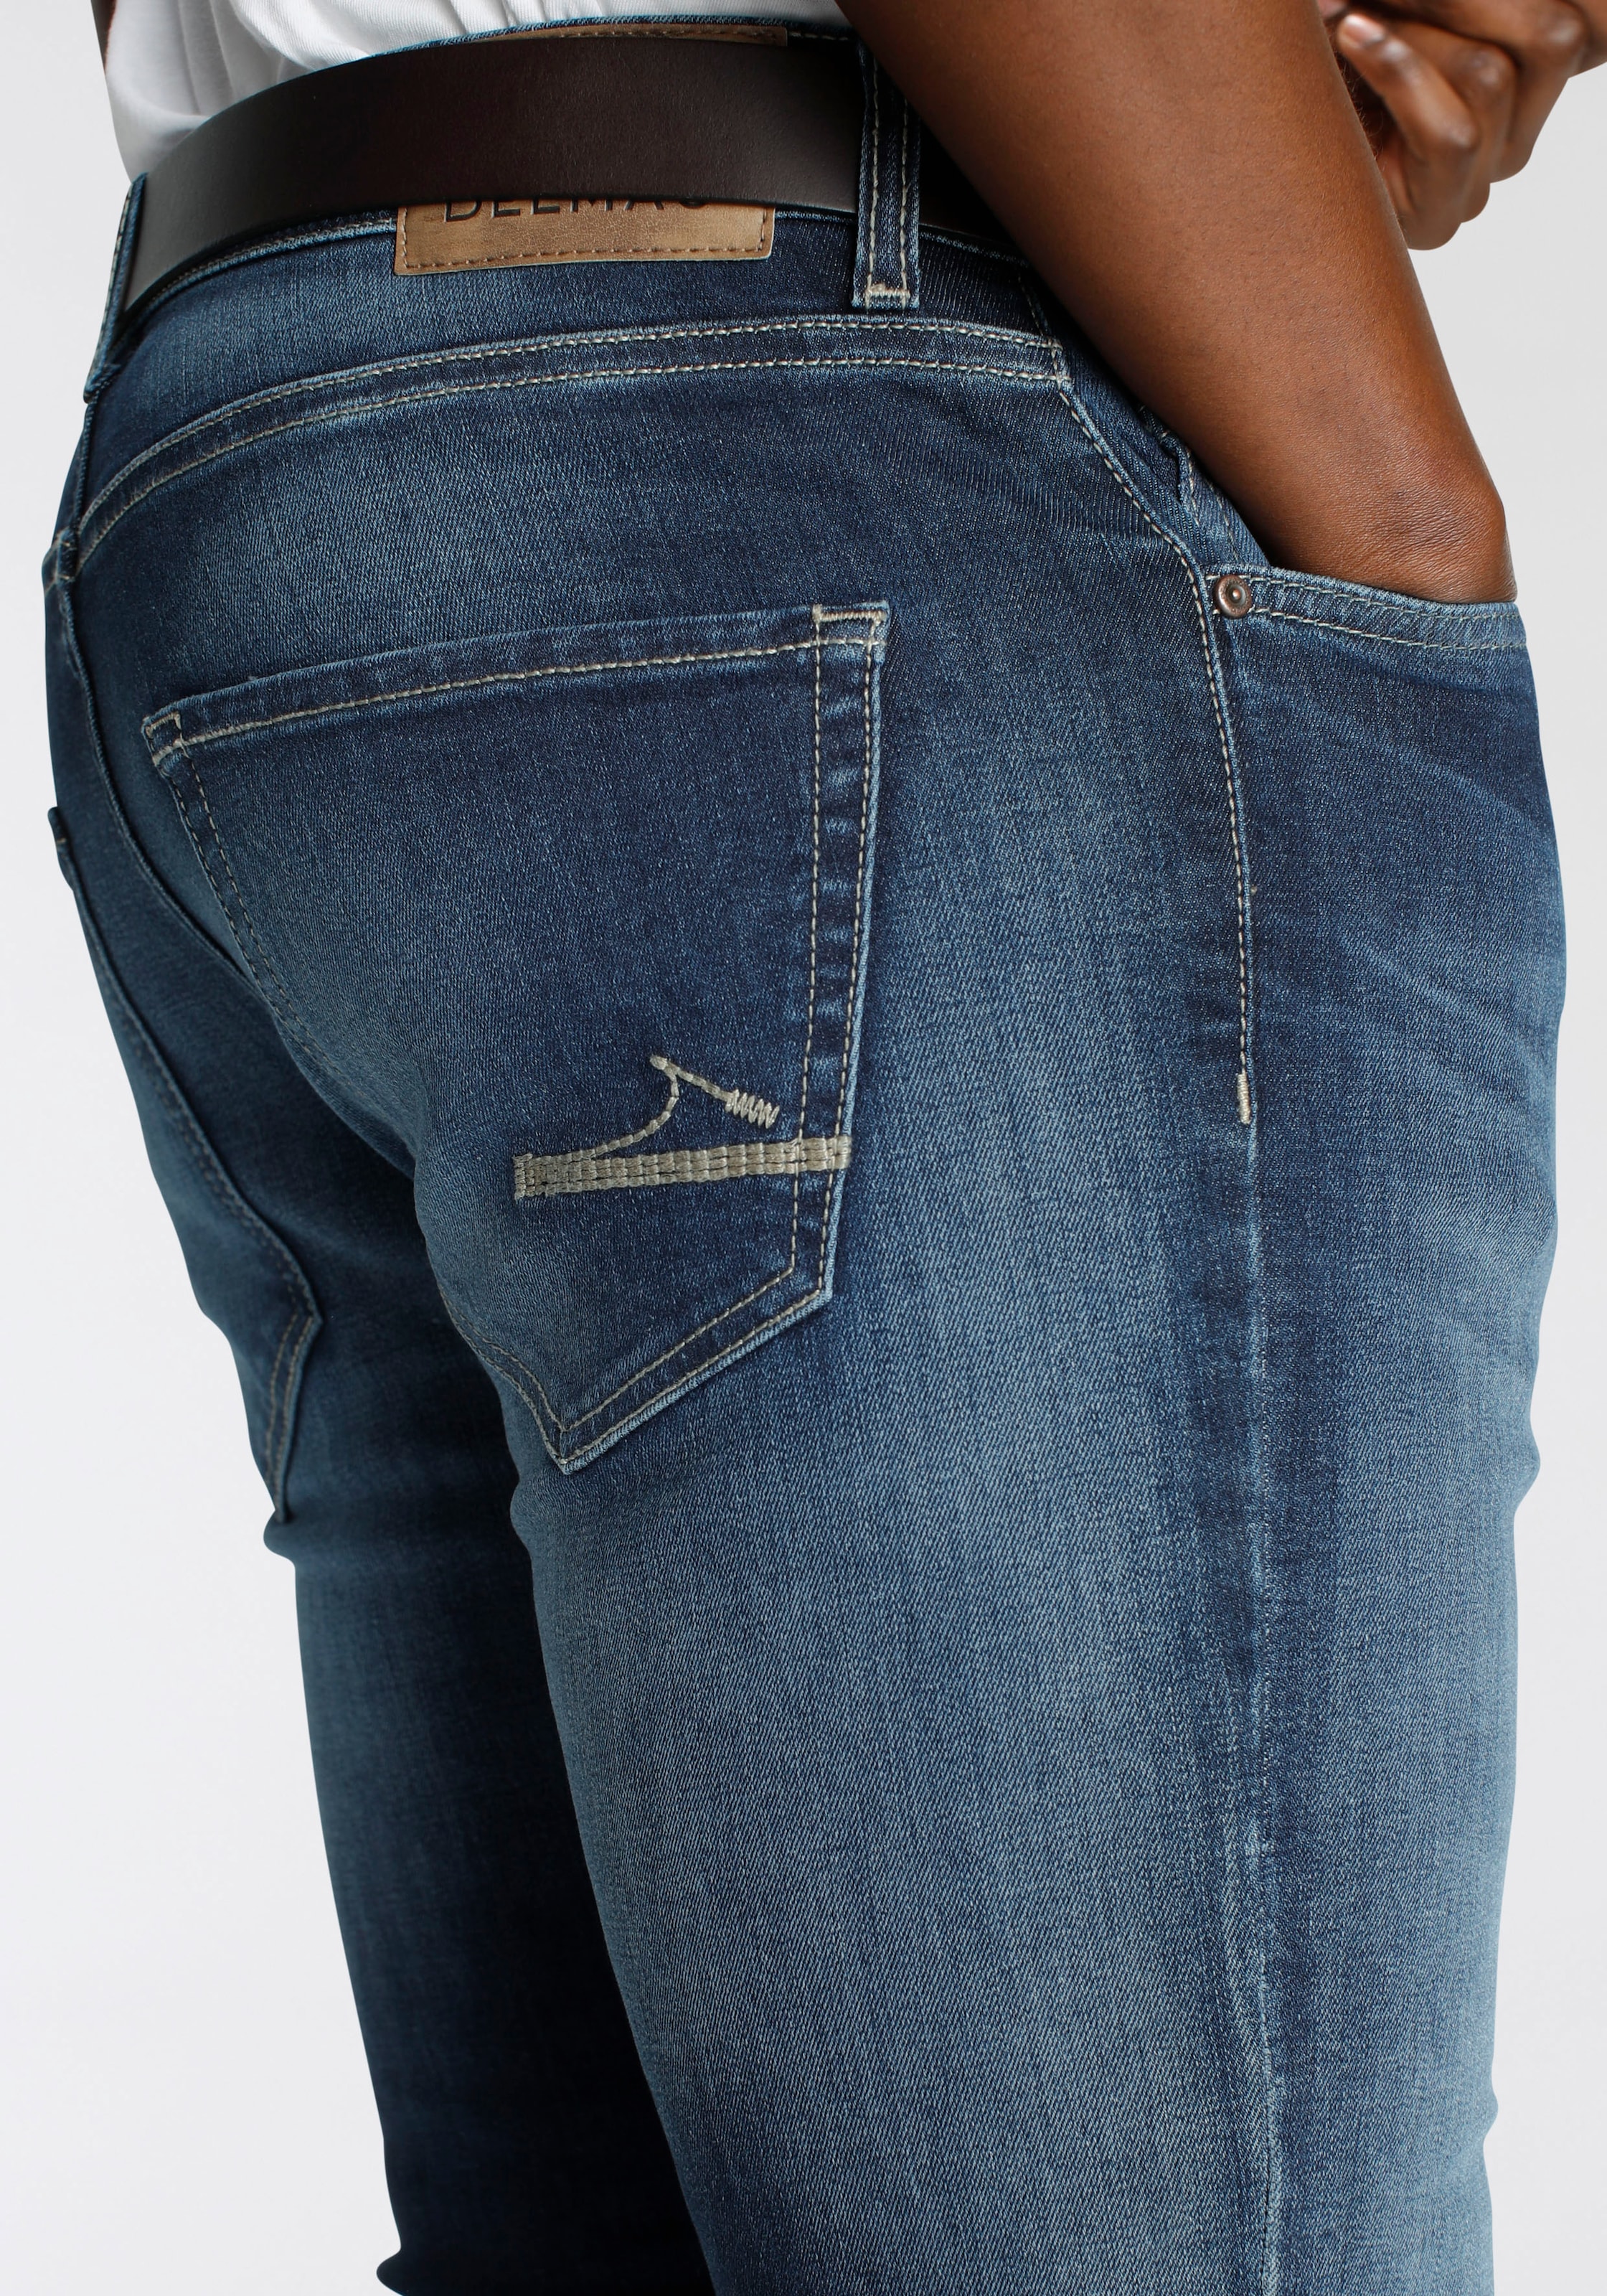 DELMAO mit MARKE! - im kaufen NEUE Stretch-Jeans schöner Innenverarbeitung Online-Shop »\